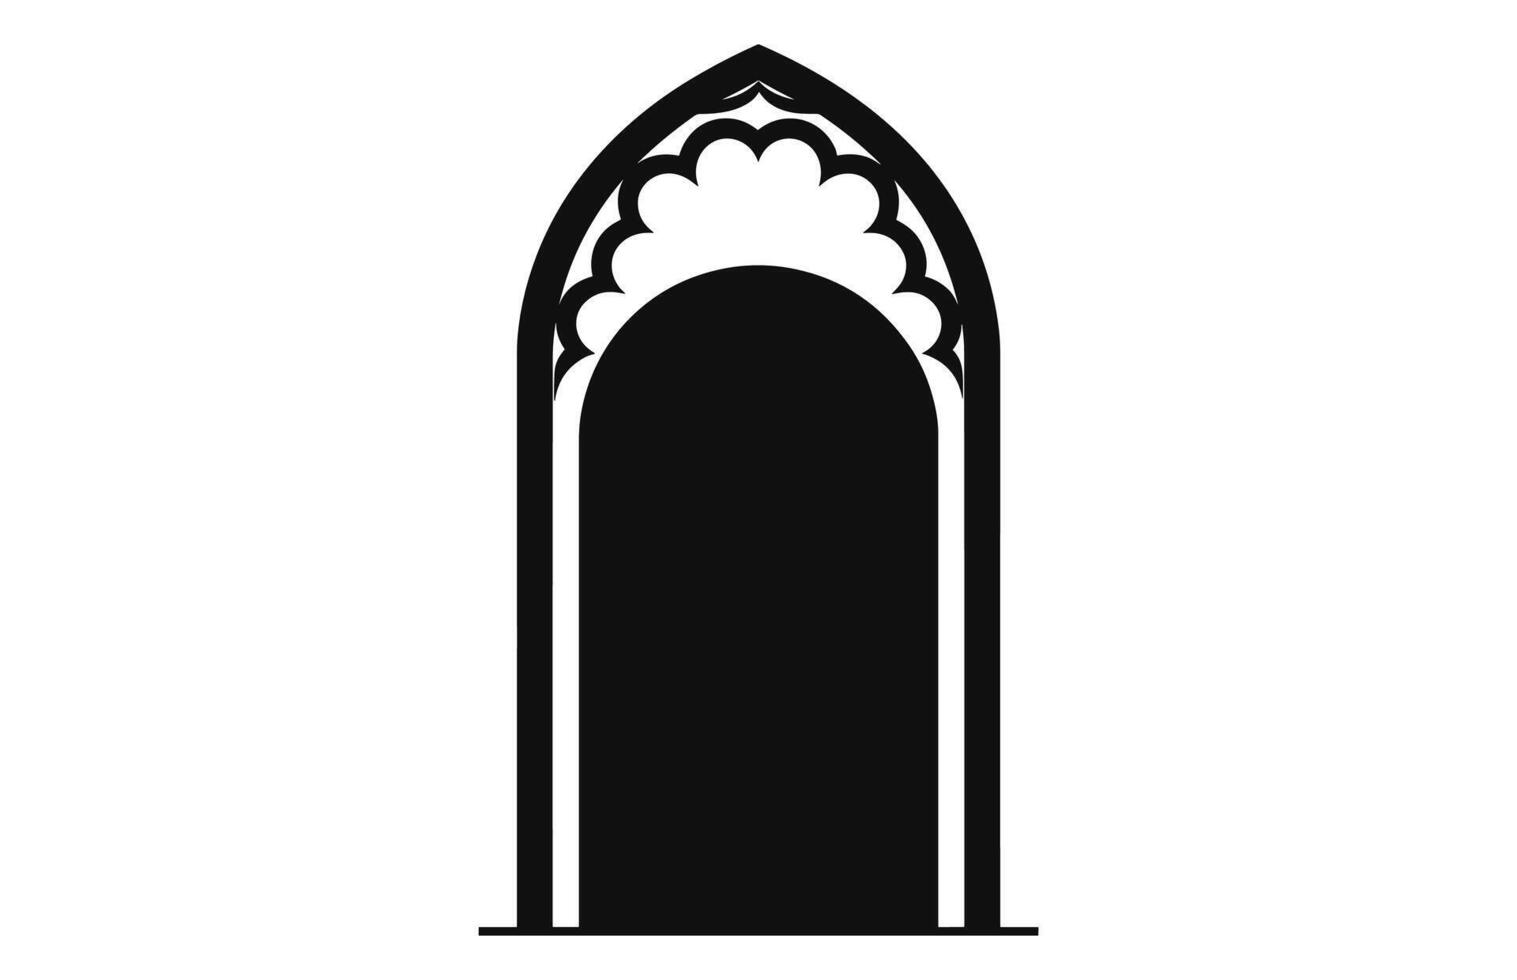 medeltida dörr silhuetter, arkitektonisk typ av valv former och former silhuetter, vektor